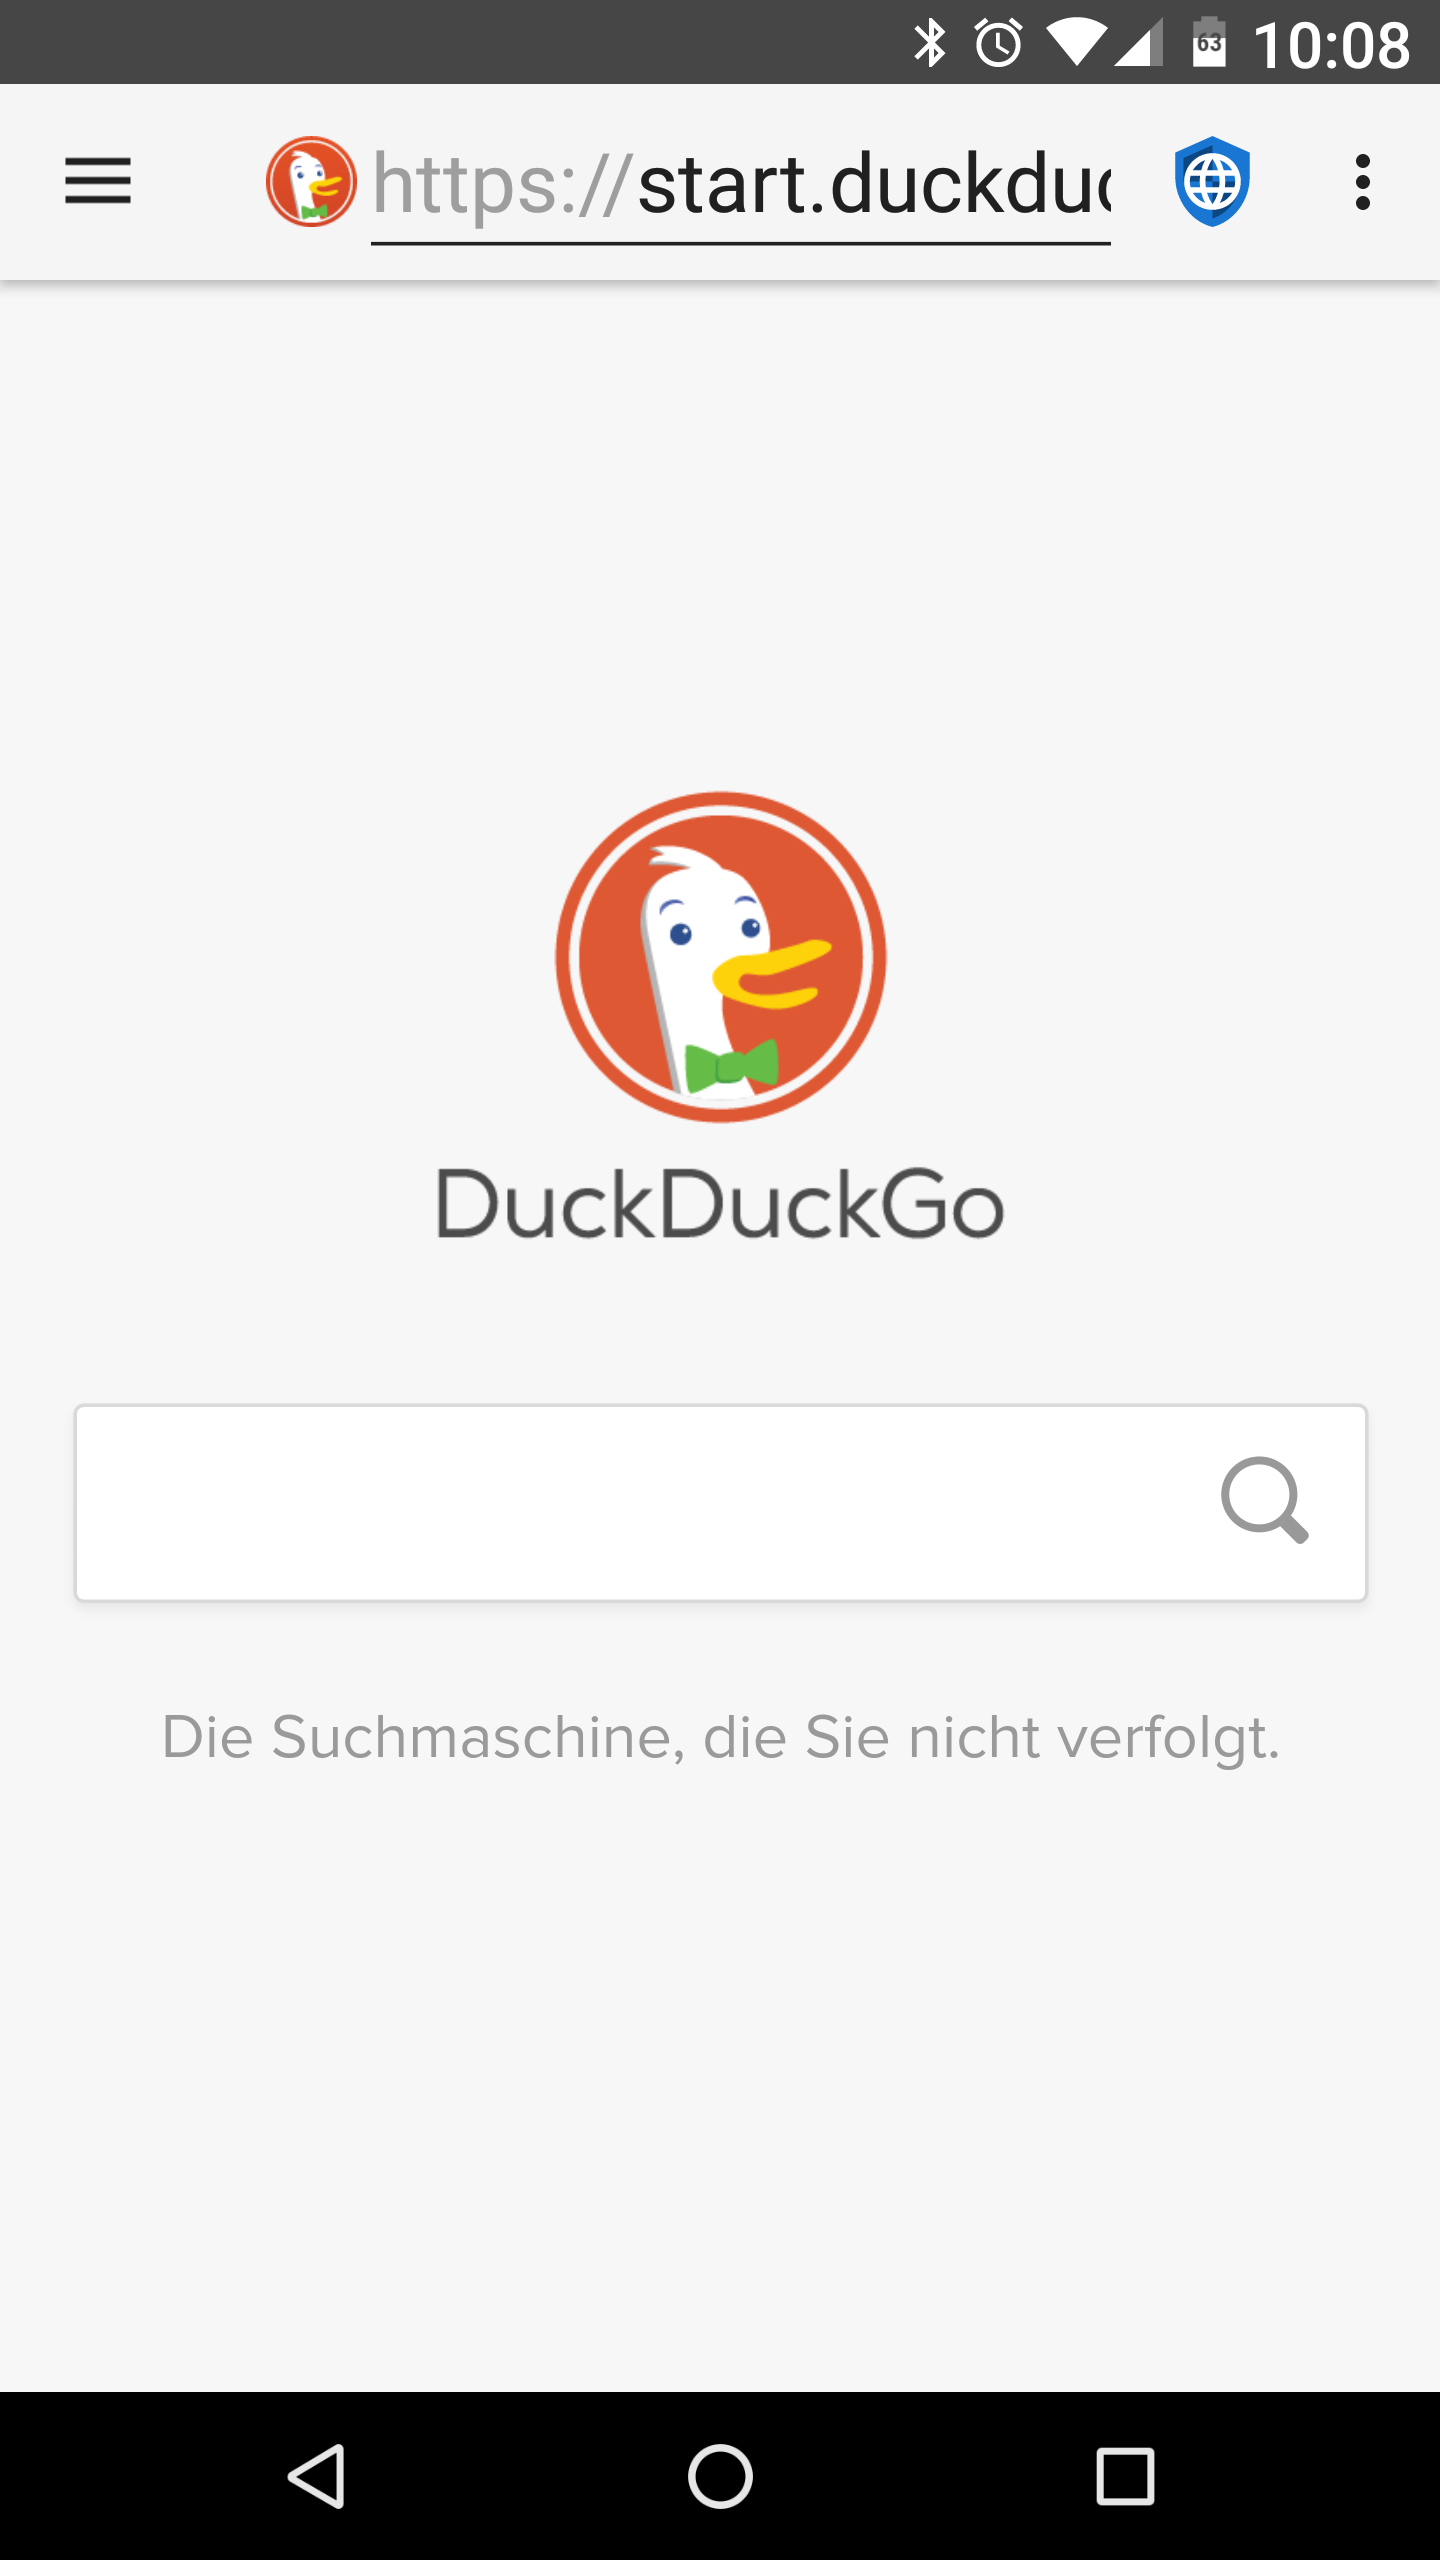 01 - DuckDuckGo - de.png